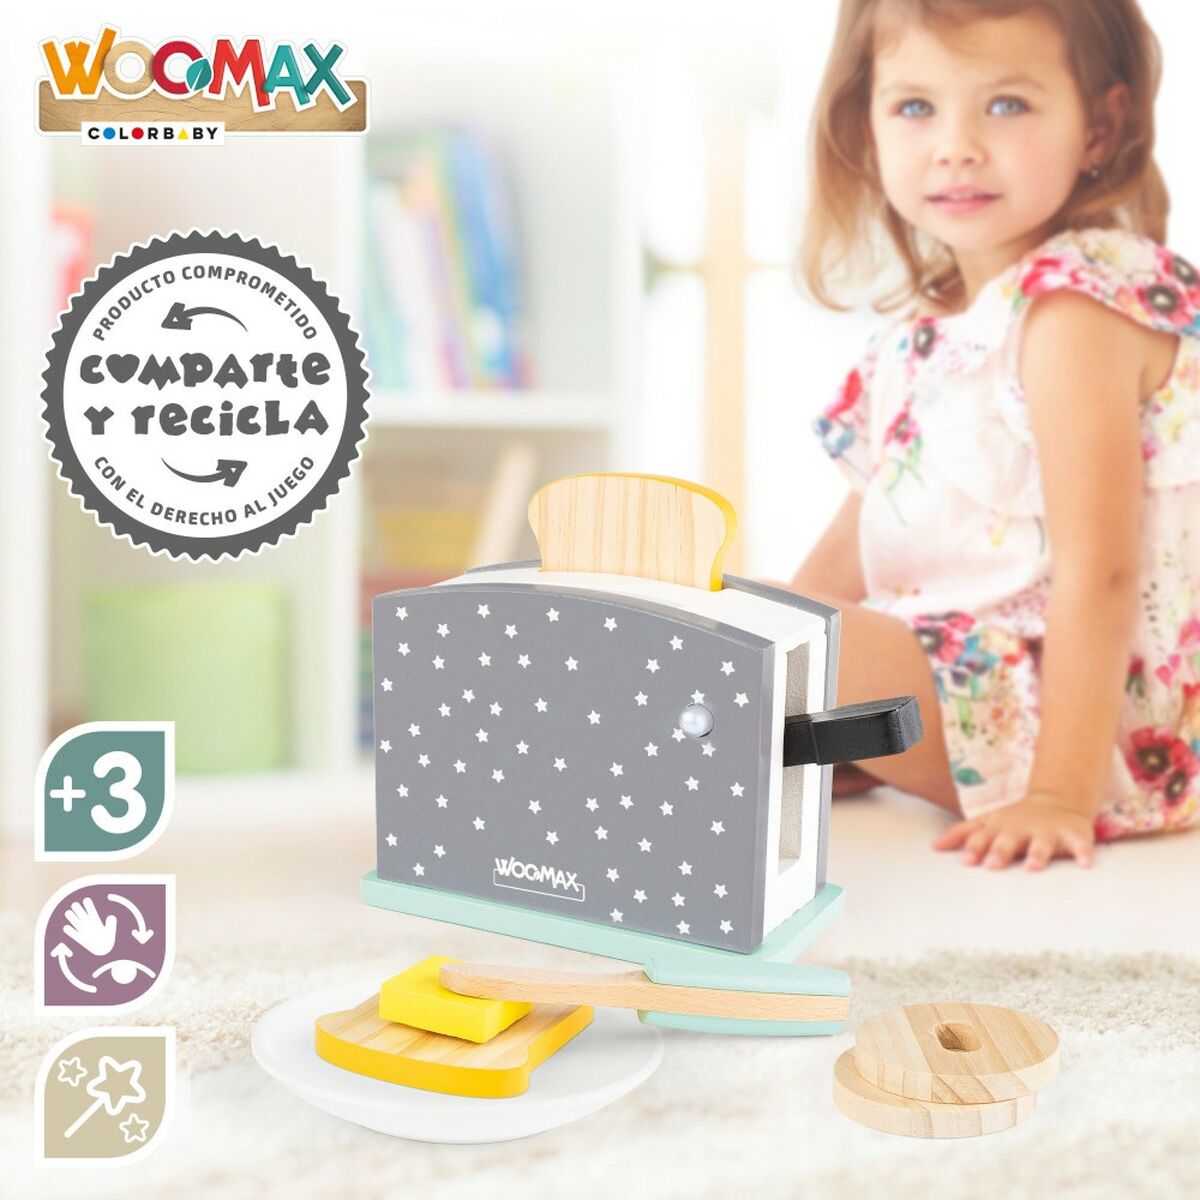 Spielzeug-Toaster Woomax 8 Stücke 19,5 x 12,5 x 8 cm (4 Stück)